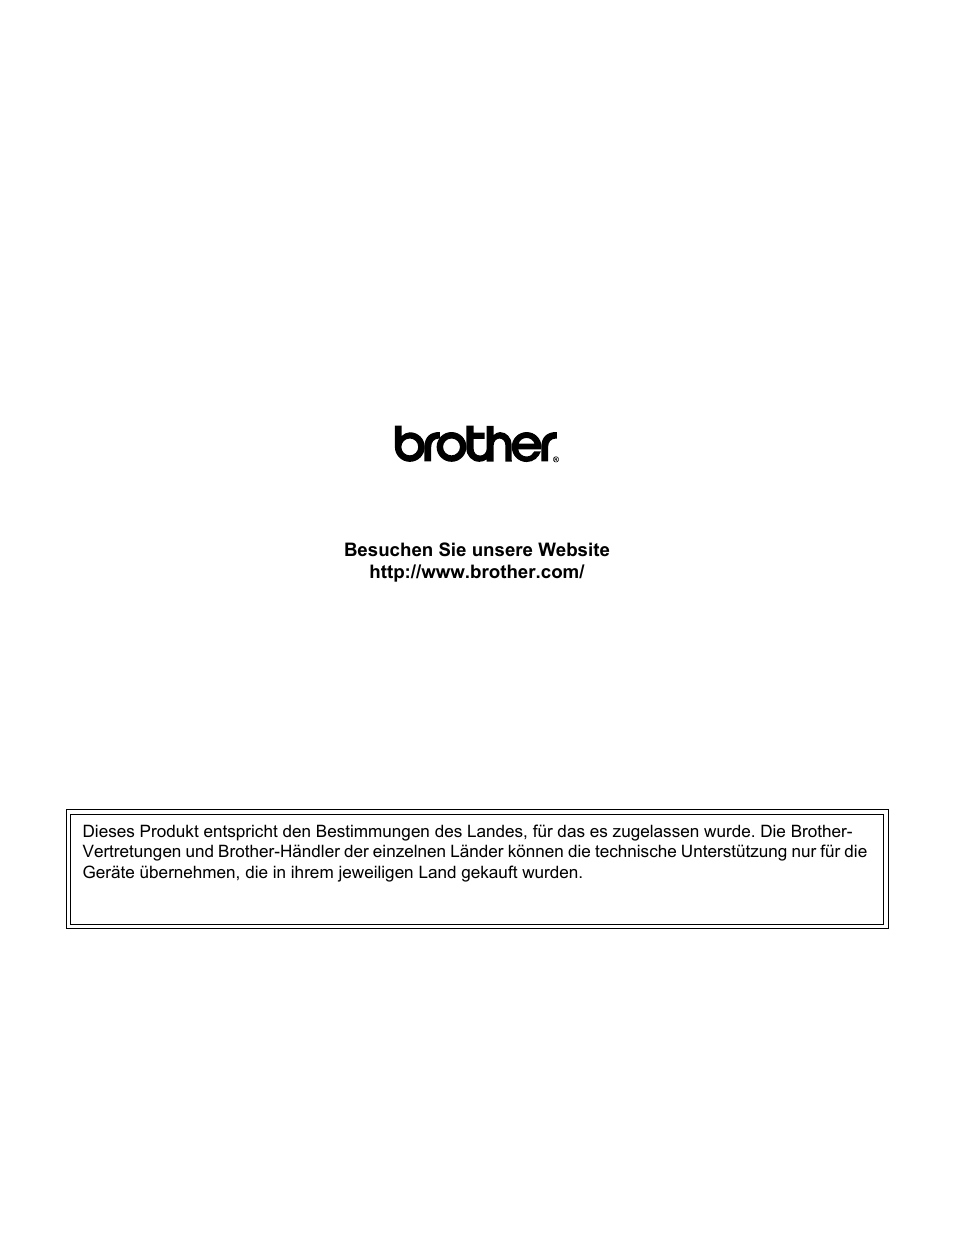 Brother ger | Brother MFC 8890DW Benutzerhandbuch | Seite 231 / 231